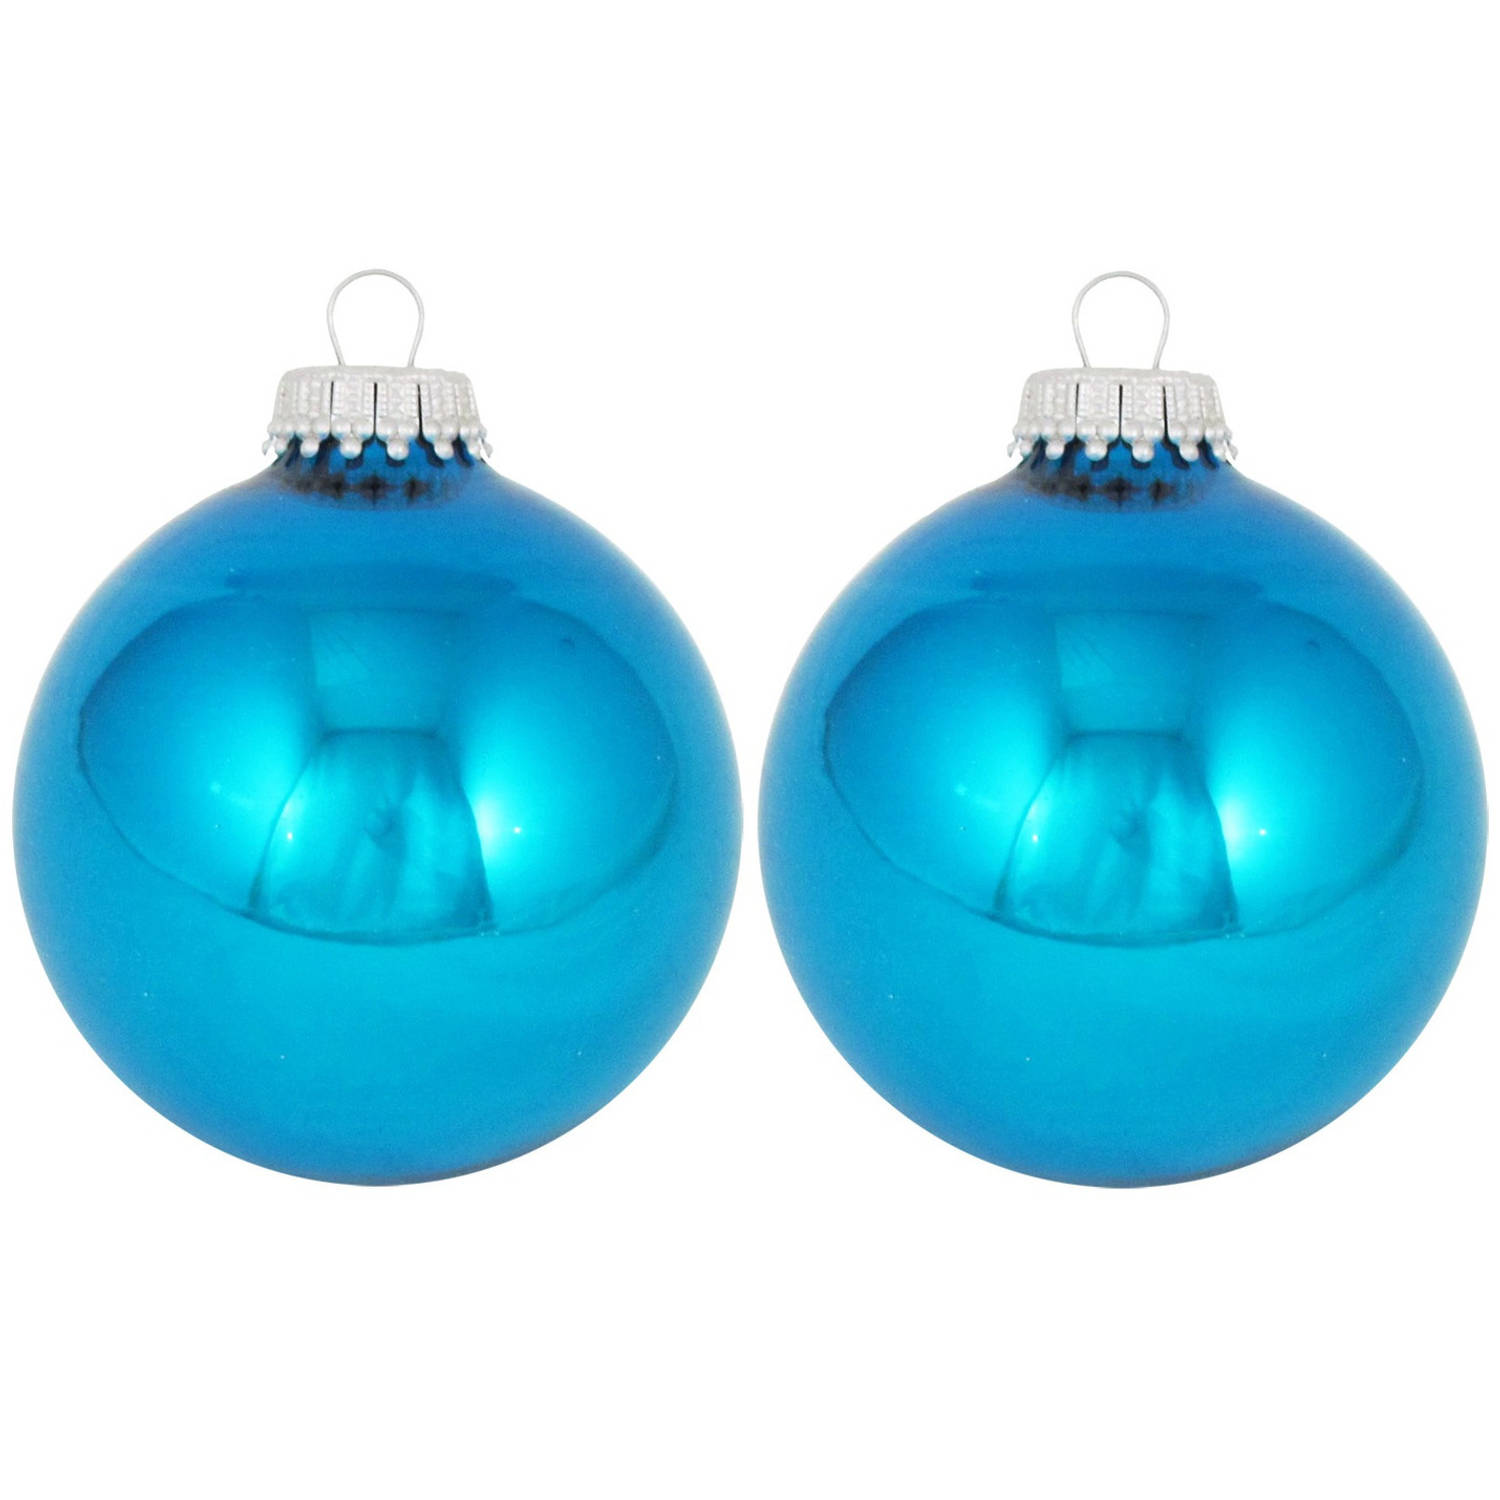 24x Hawaii Blauwe Glazen Kerstballen Glans 7 Cm Kerstboomversiering Kerstbal